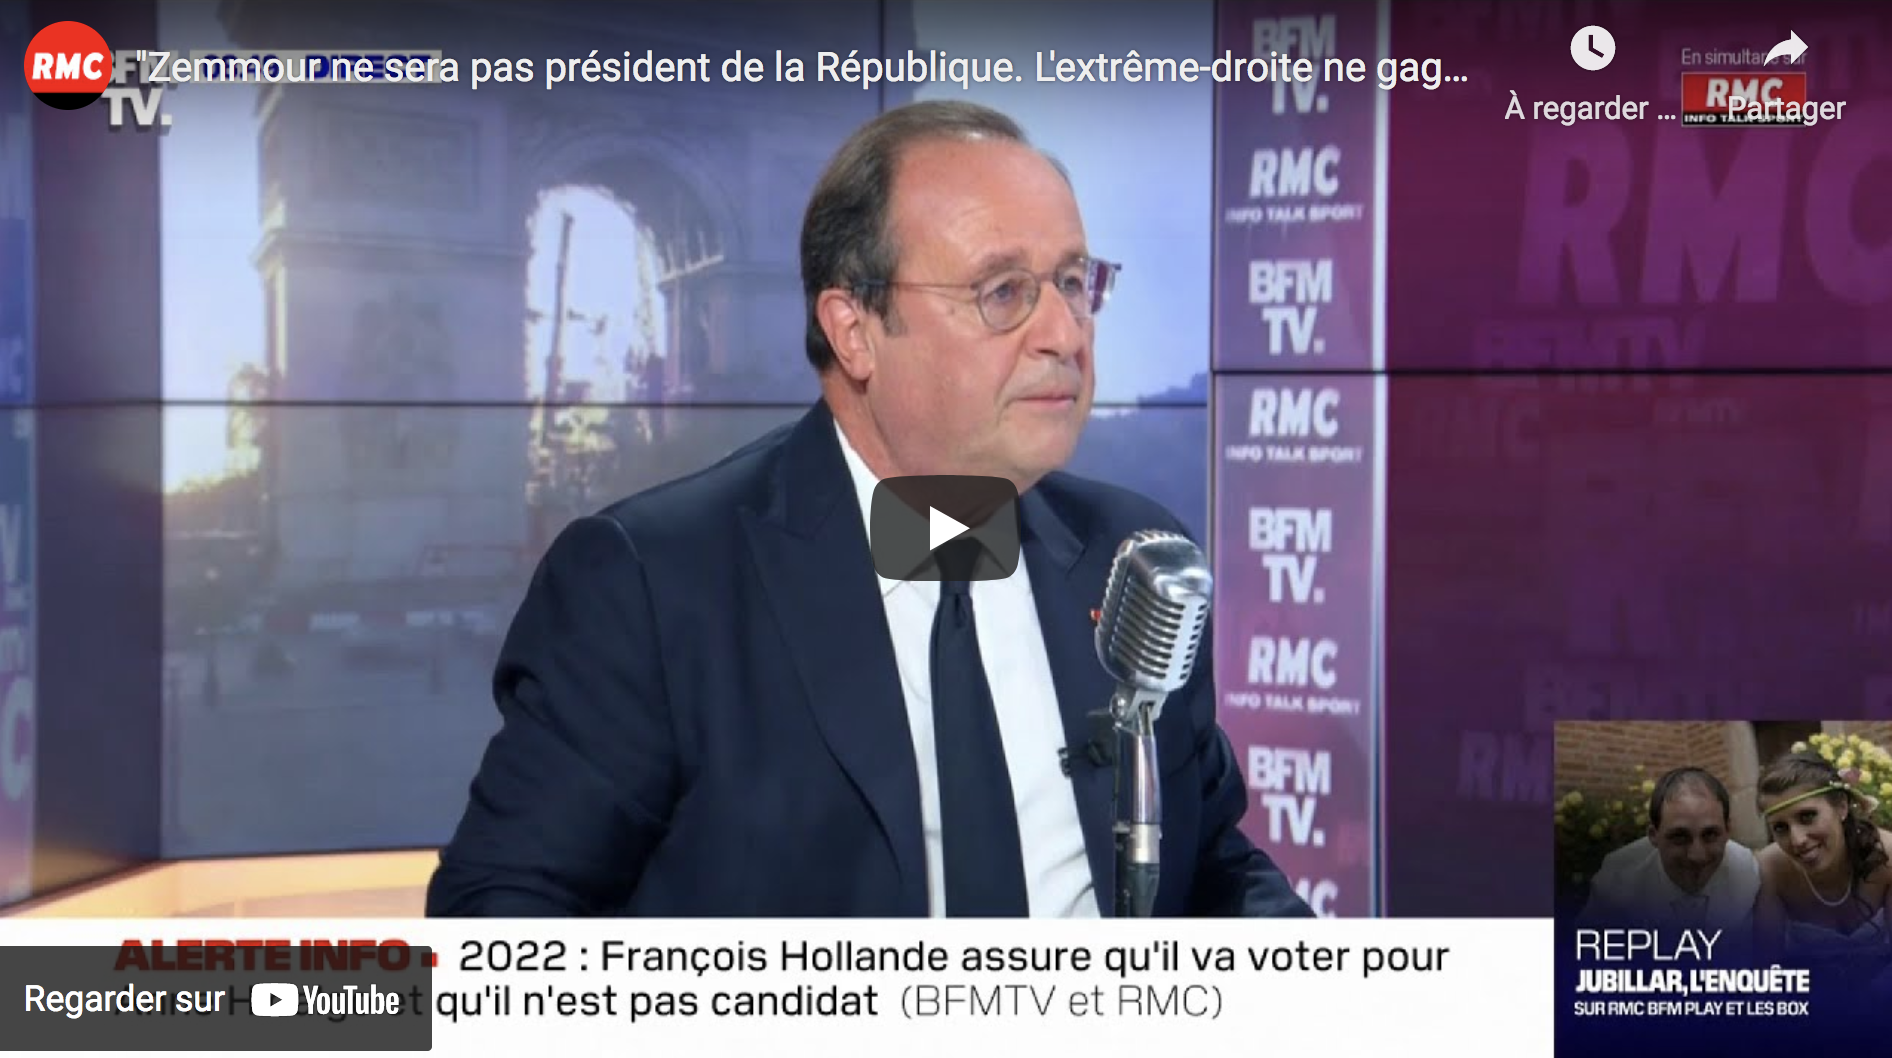 François Hollande : “Éric Zemmour ne sera pas président de la République. L’extrême-droite ne gagnera pas” (VIDÉO)